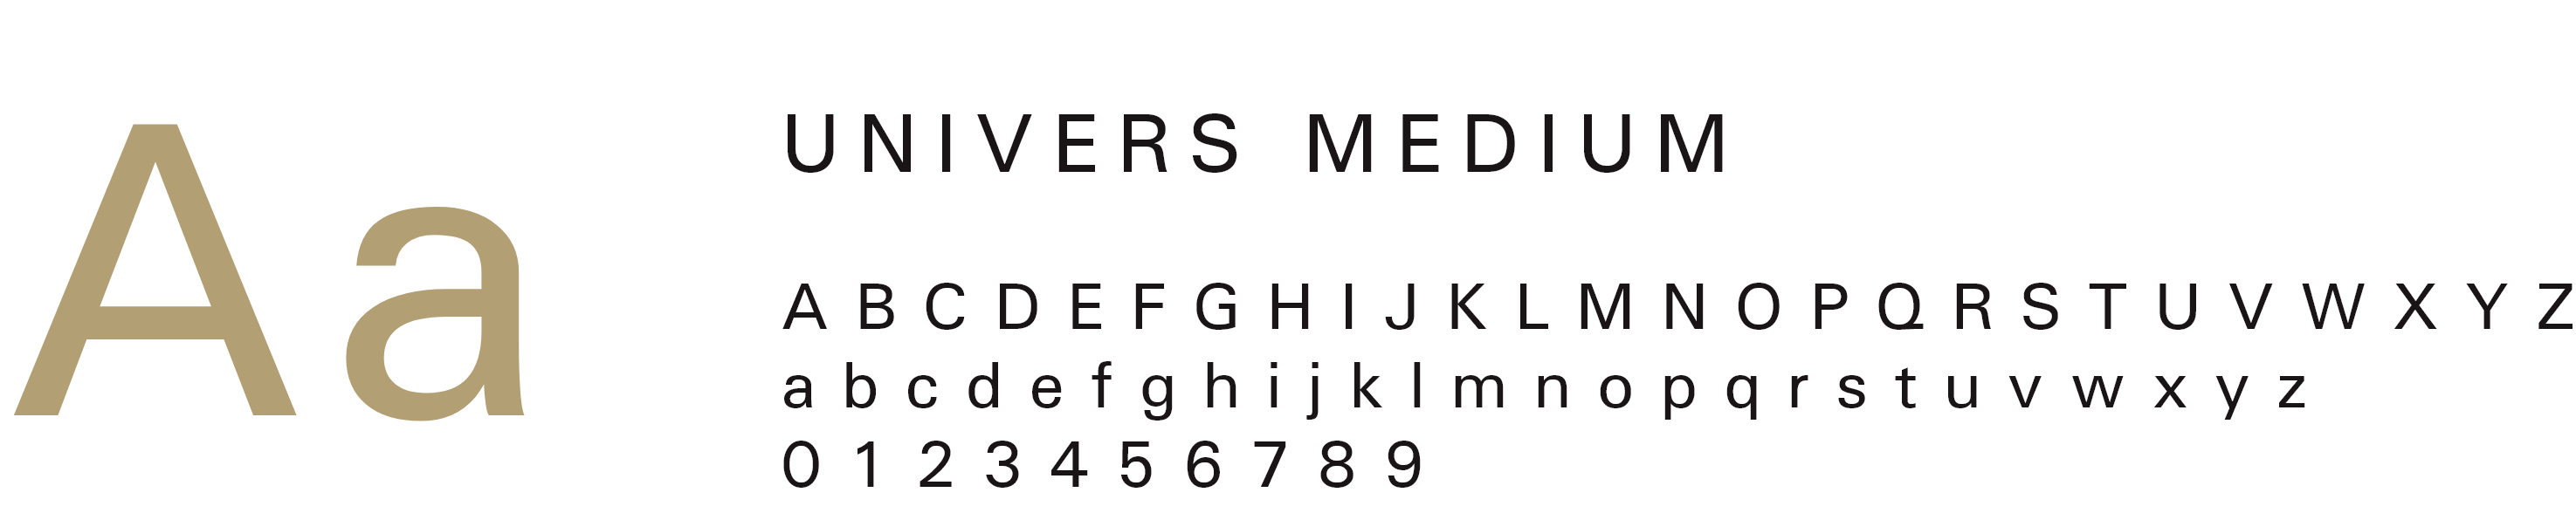 univers-medium logo